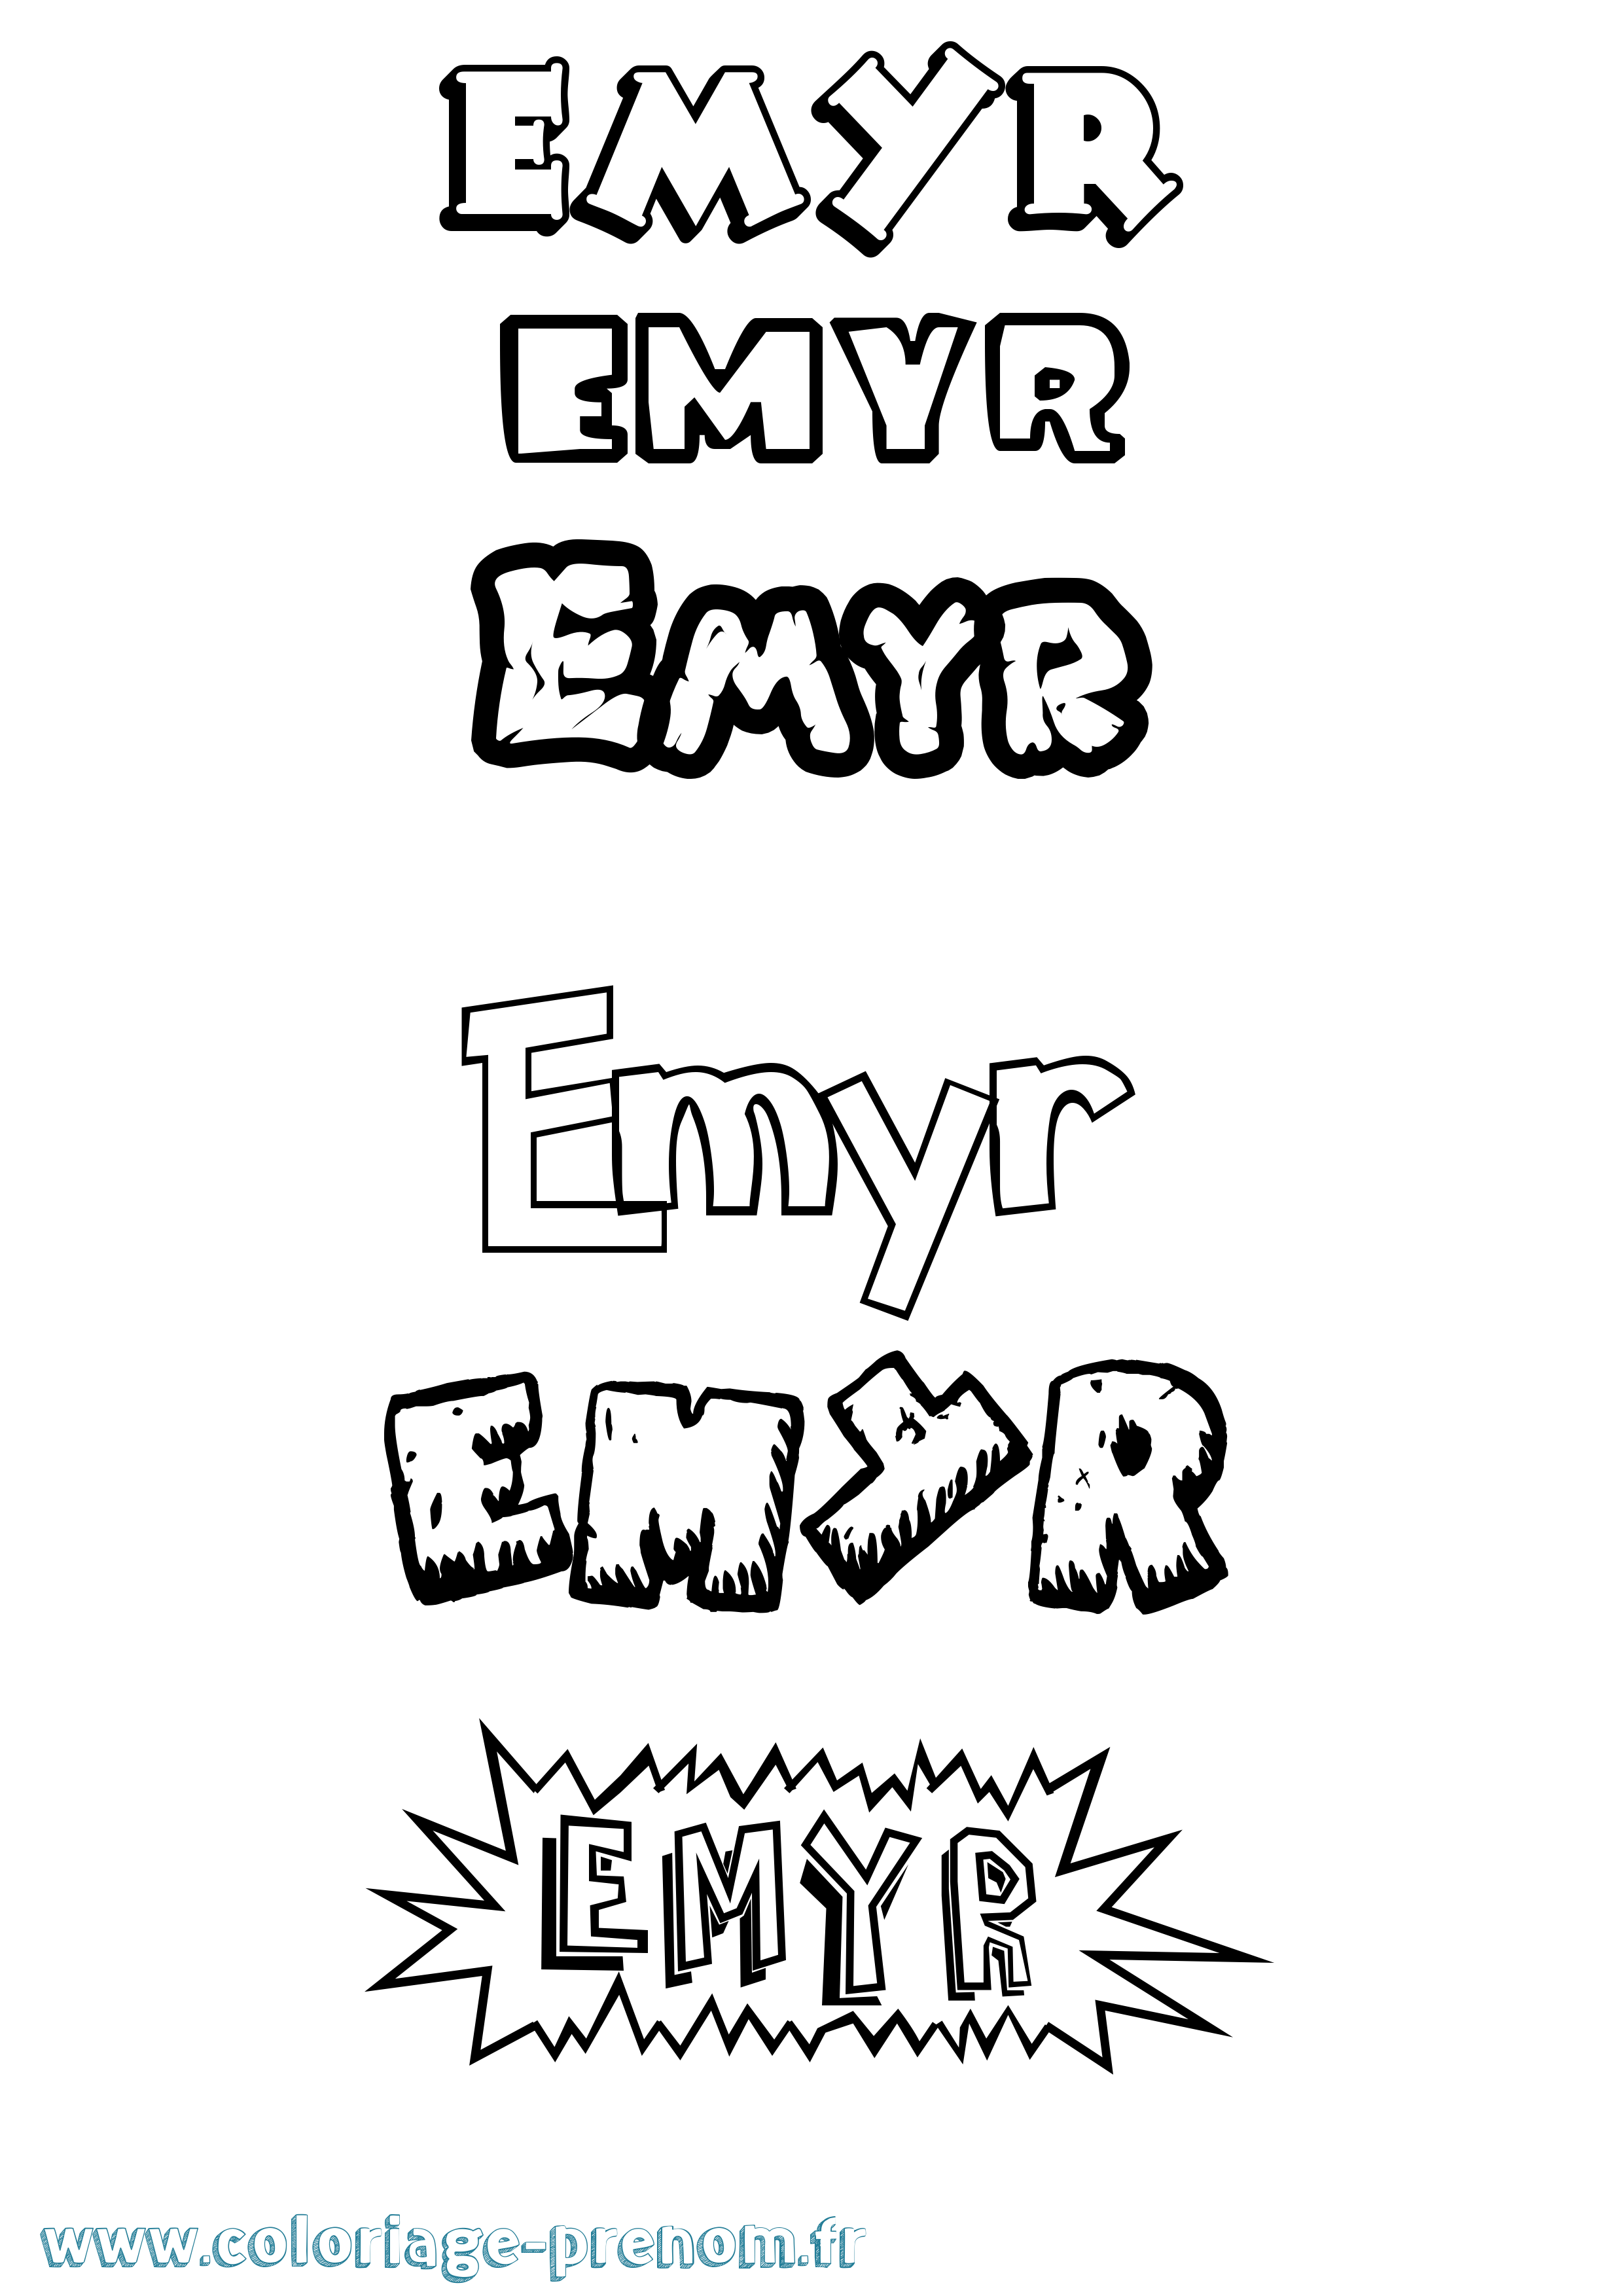 Coloriage prénom Emyr Dessin Animé